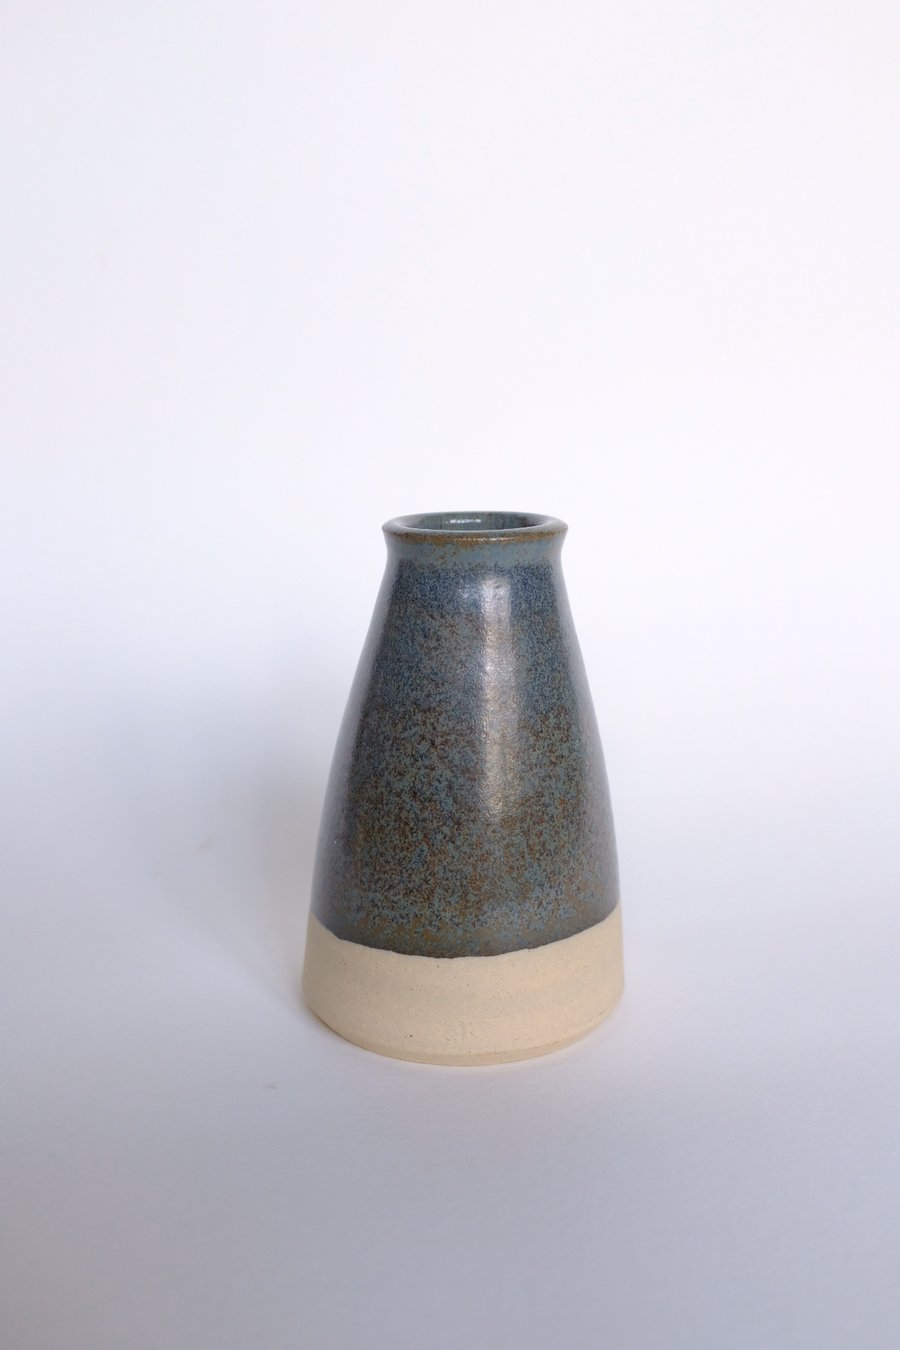 Miniature bud vase